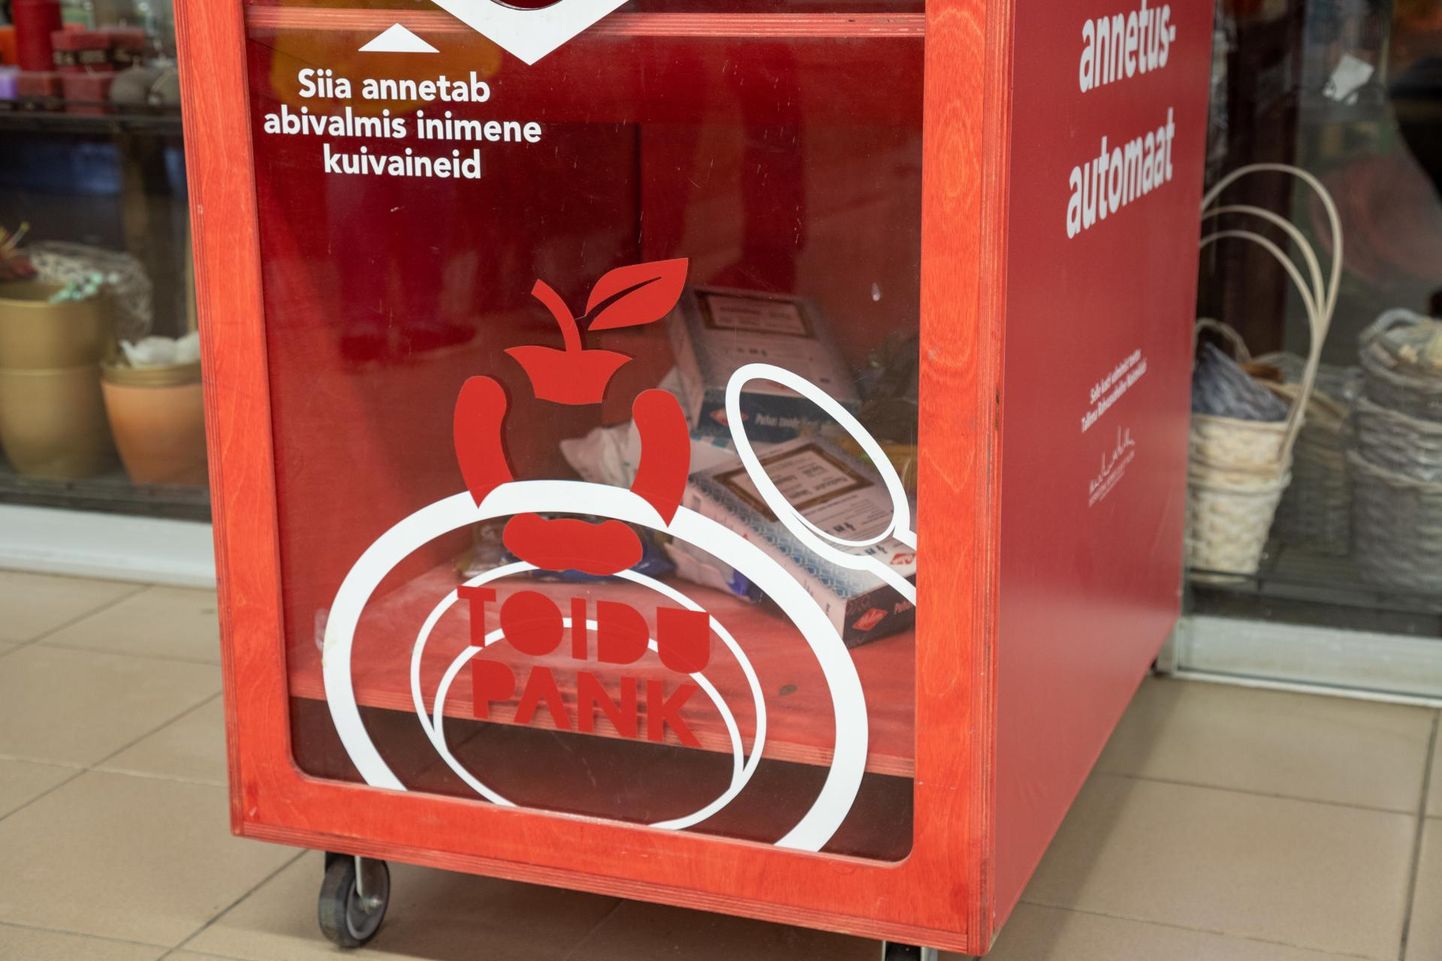 Viljandis saab toidukraami annetada Maksimarketi infoleti juures olevasse annetuskasti.